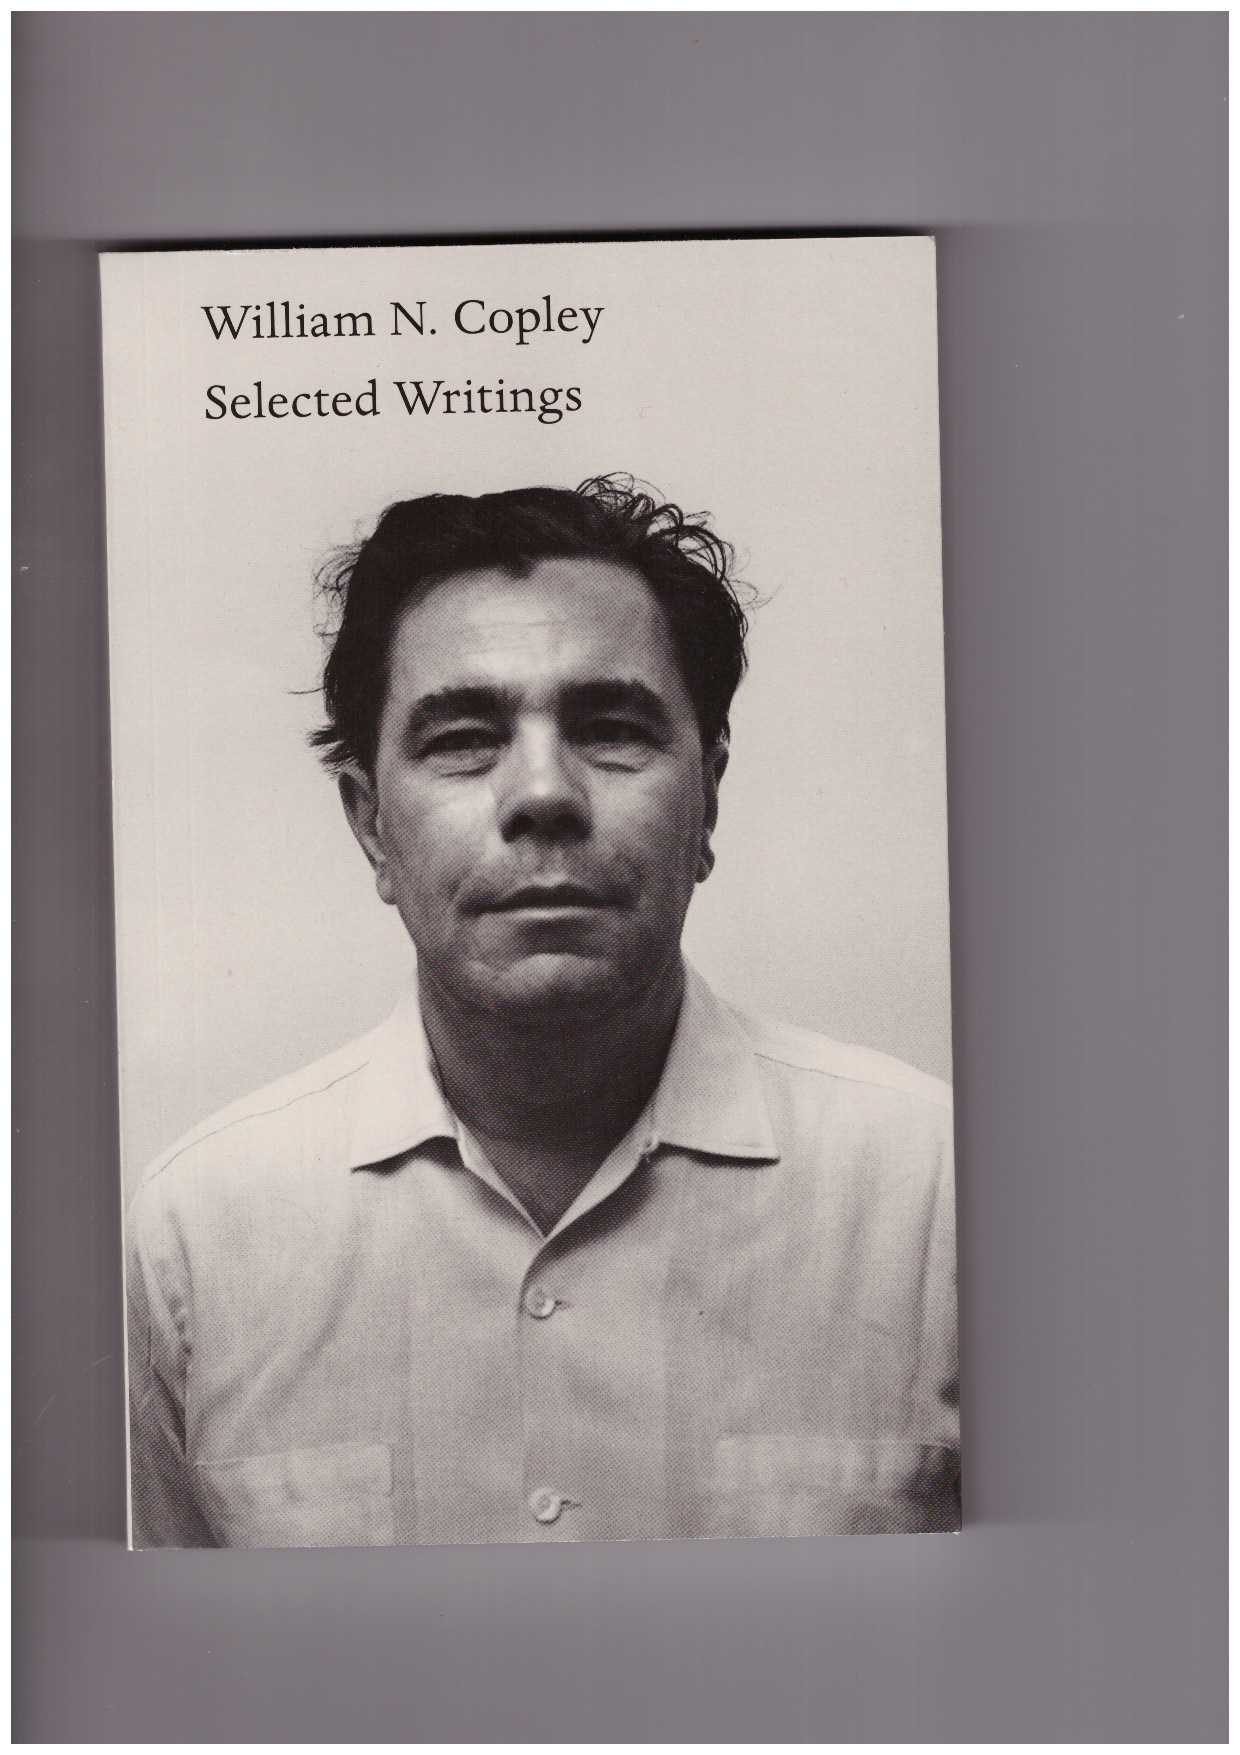 COPLEY, William N. - Selected writings by William N. Copley